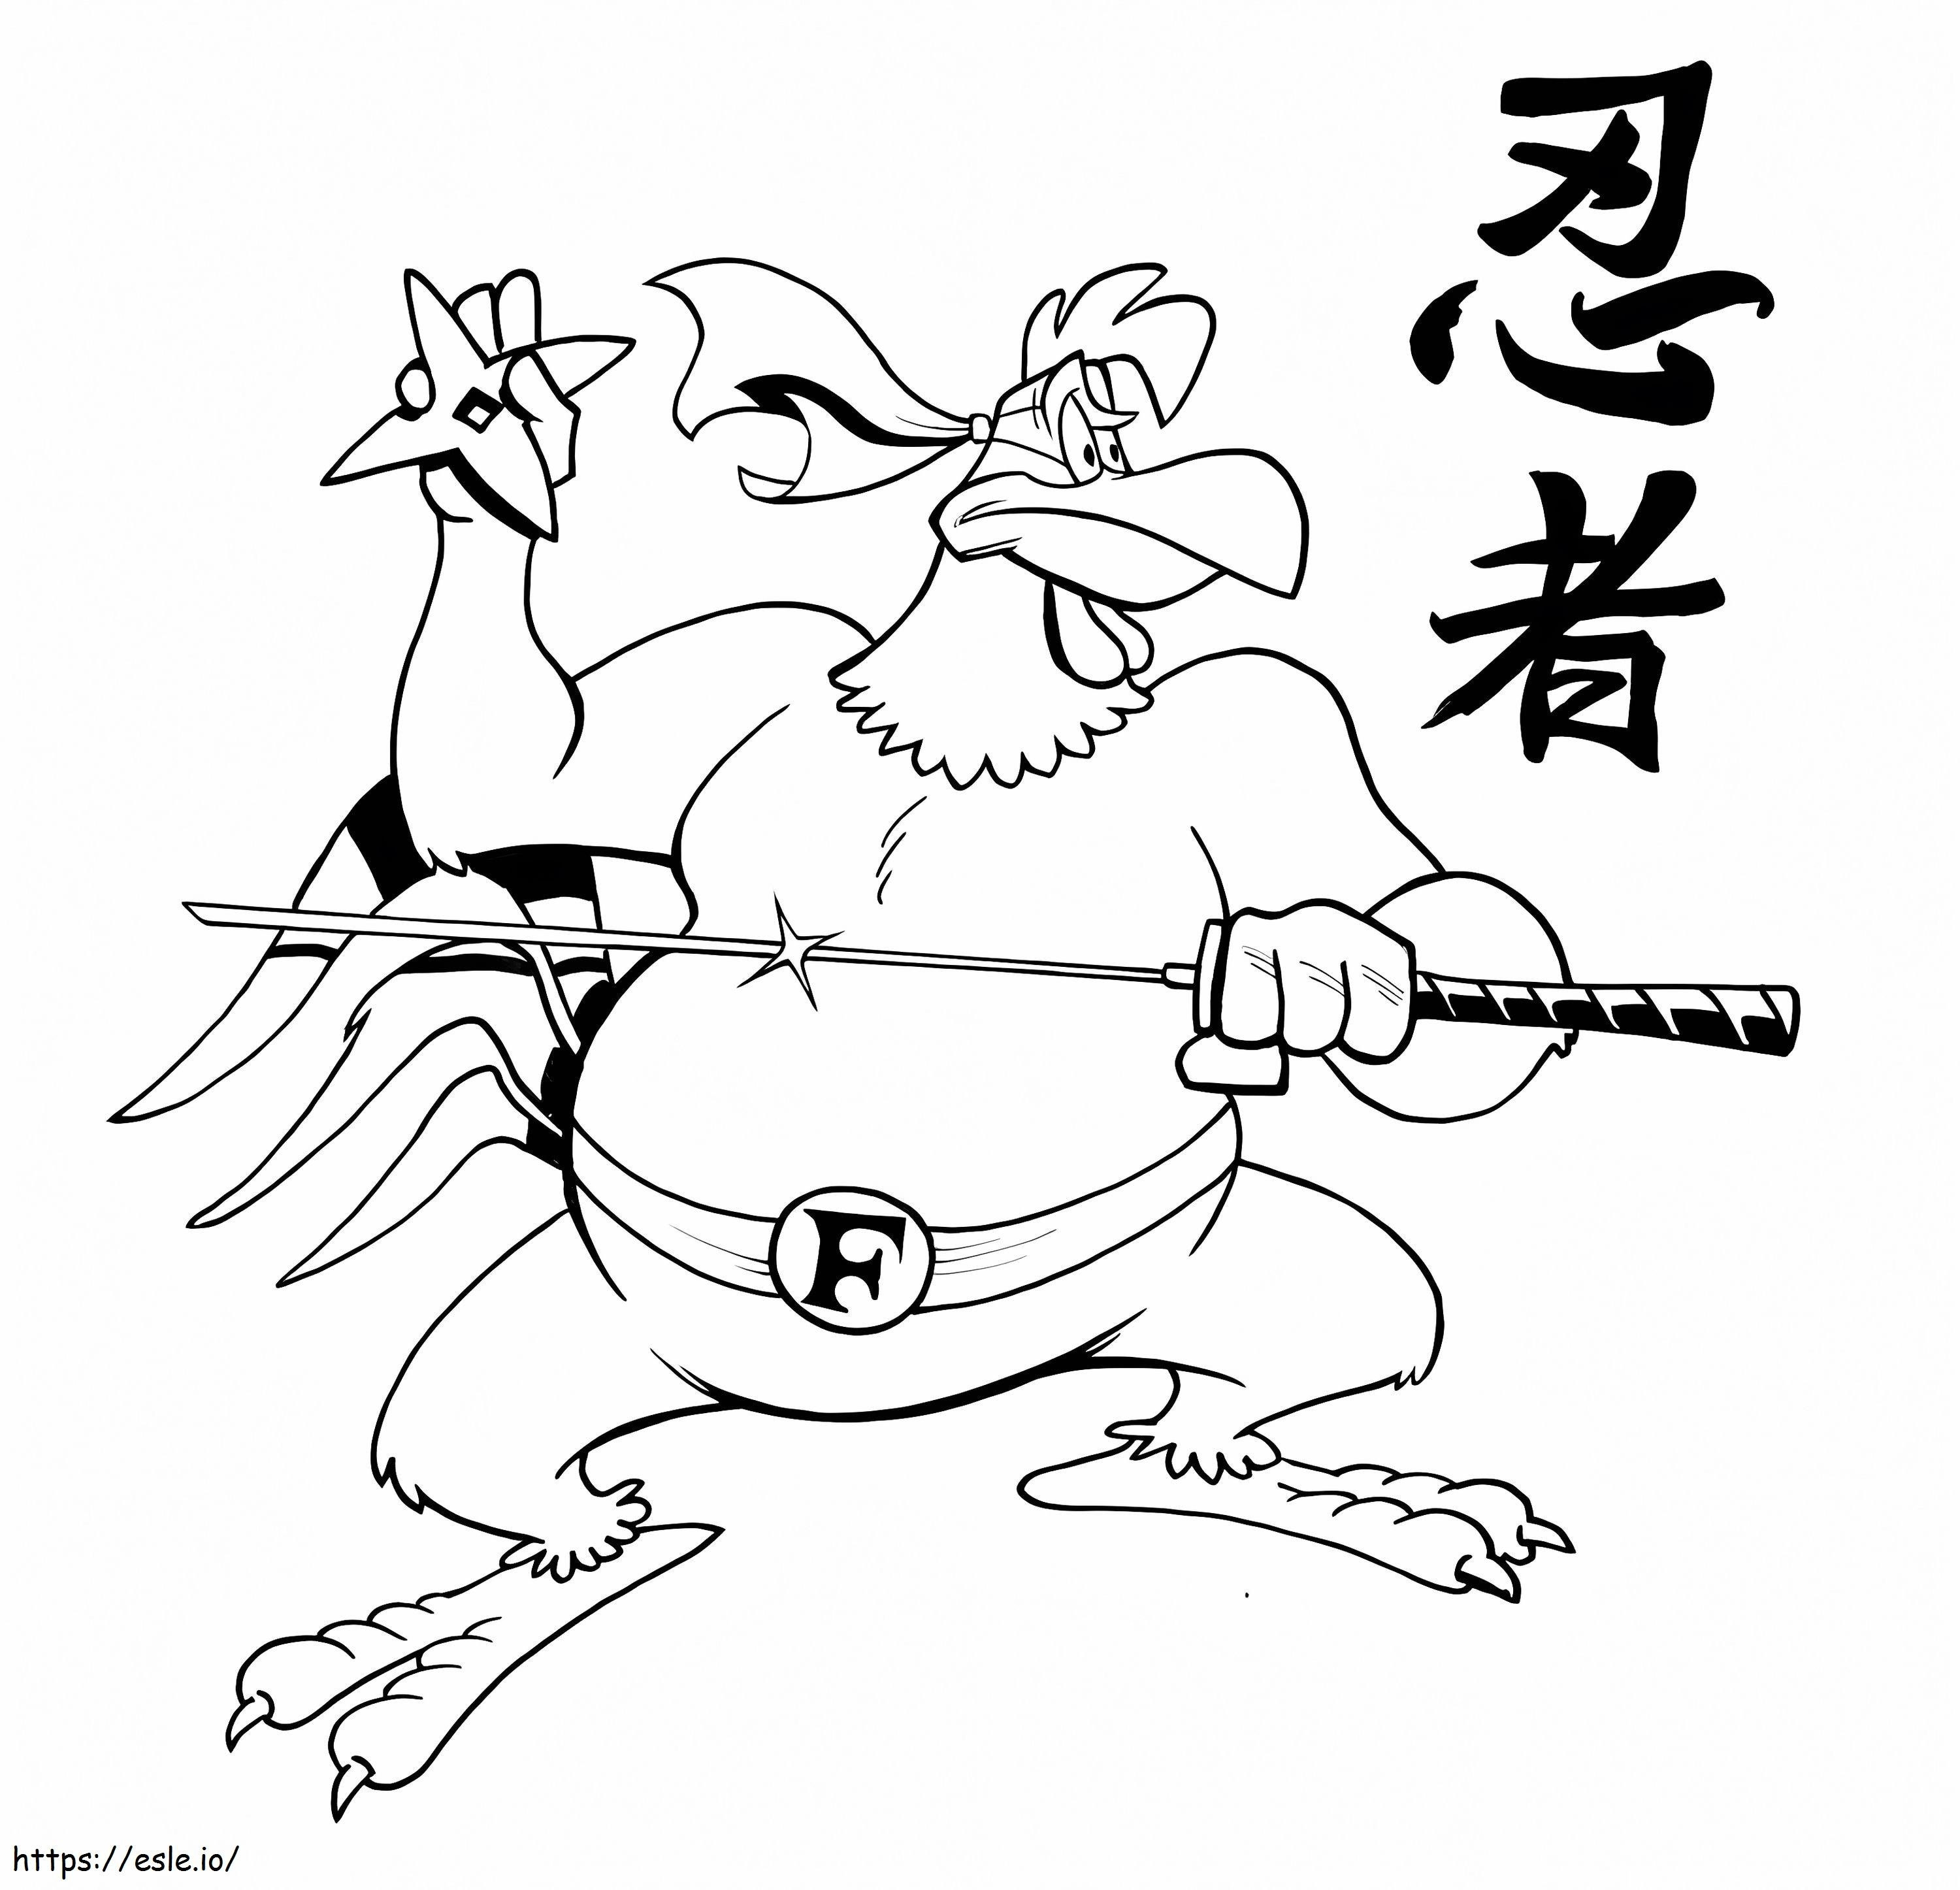 Ninja Foghorn Leghorn coloring page